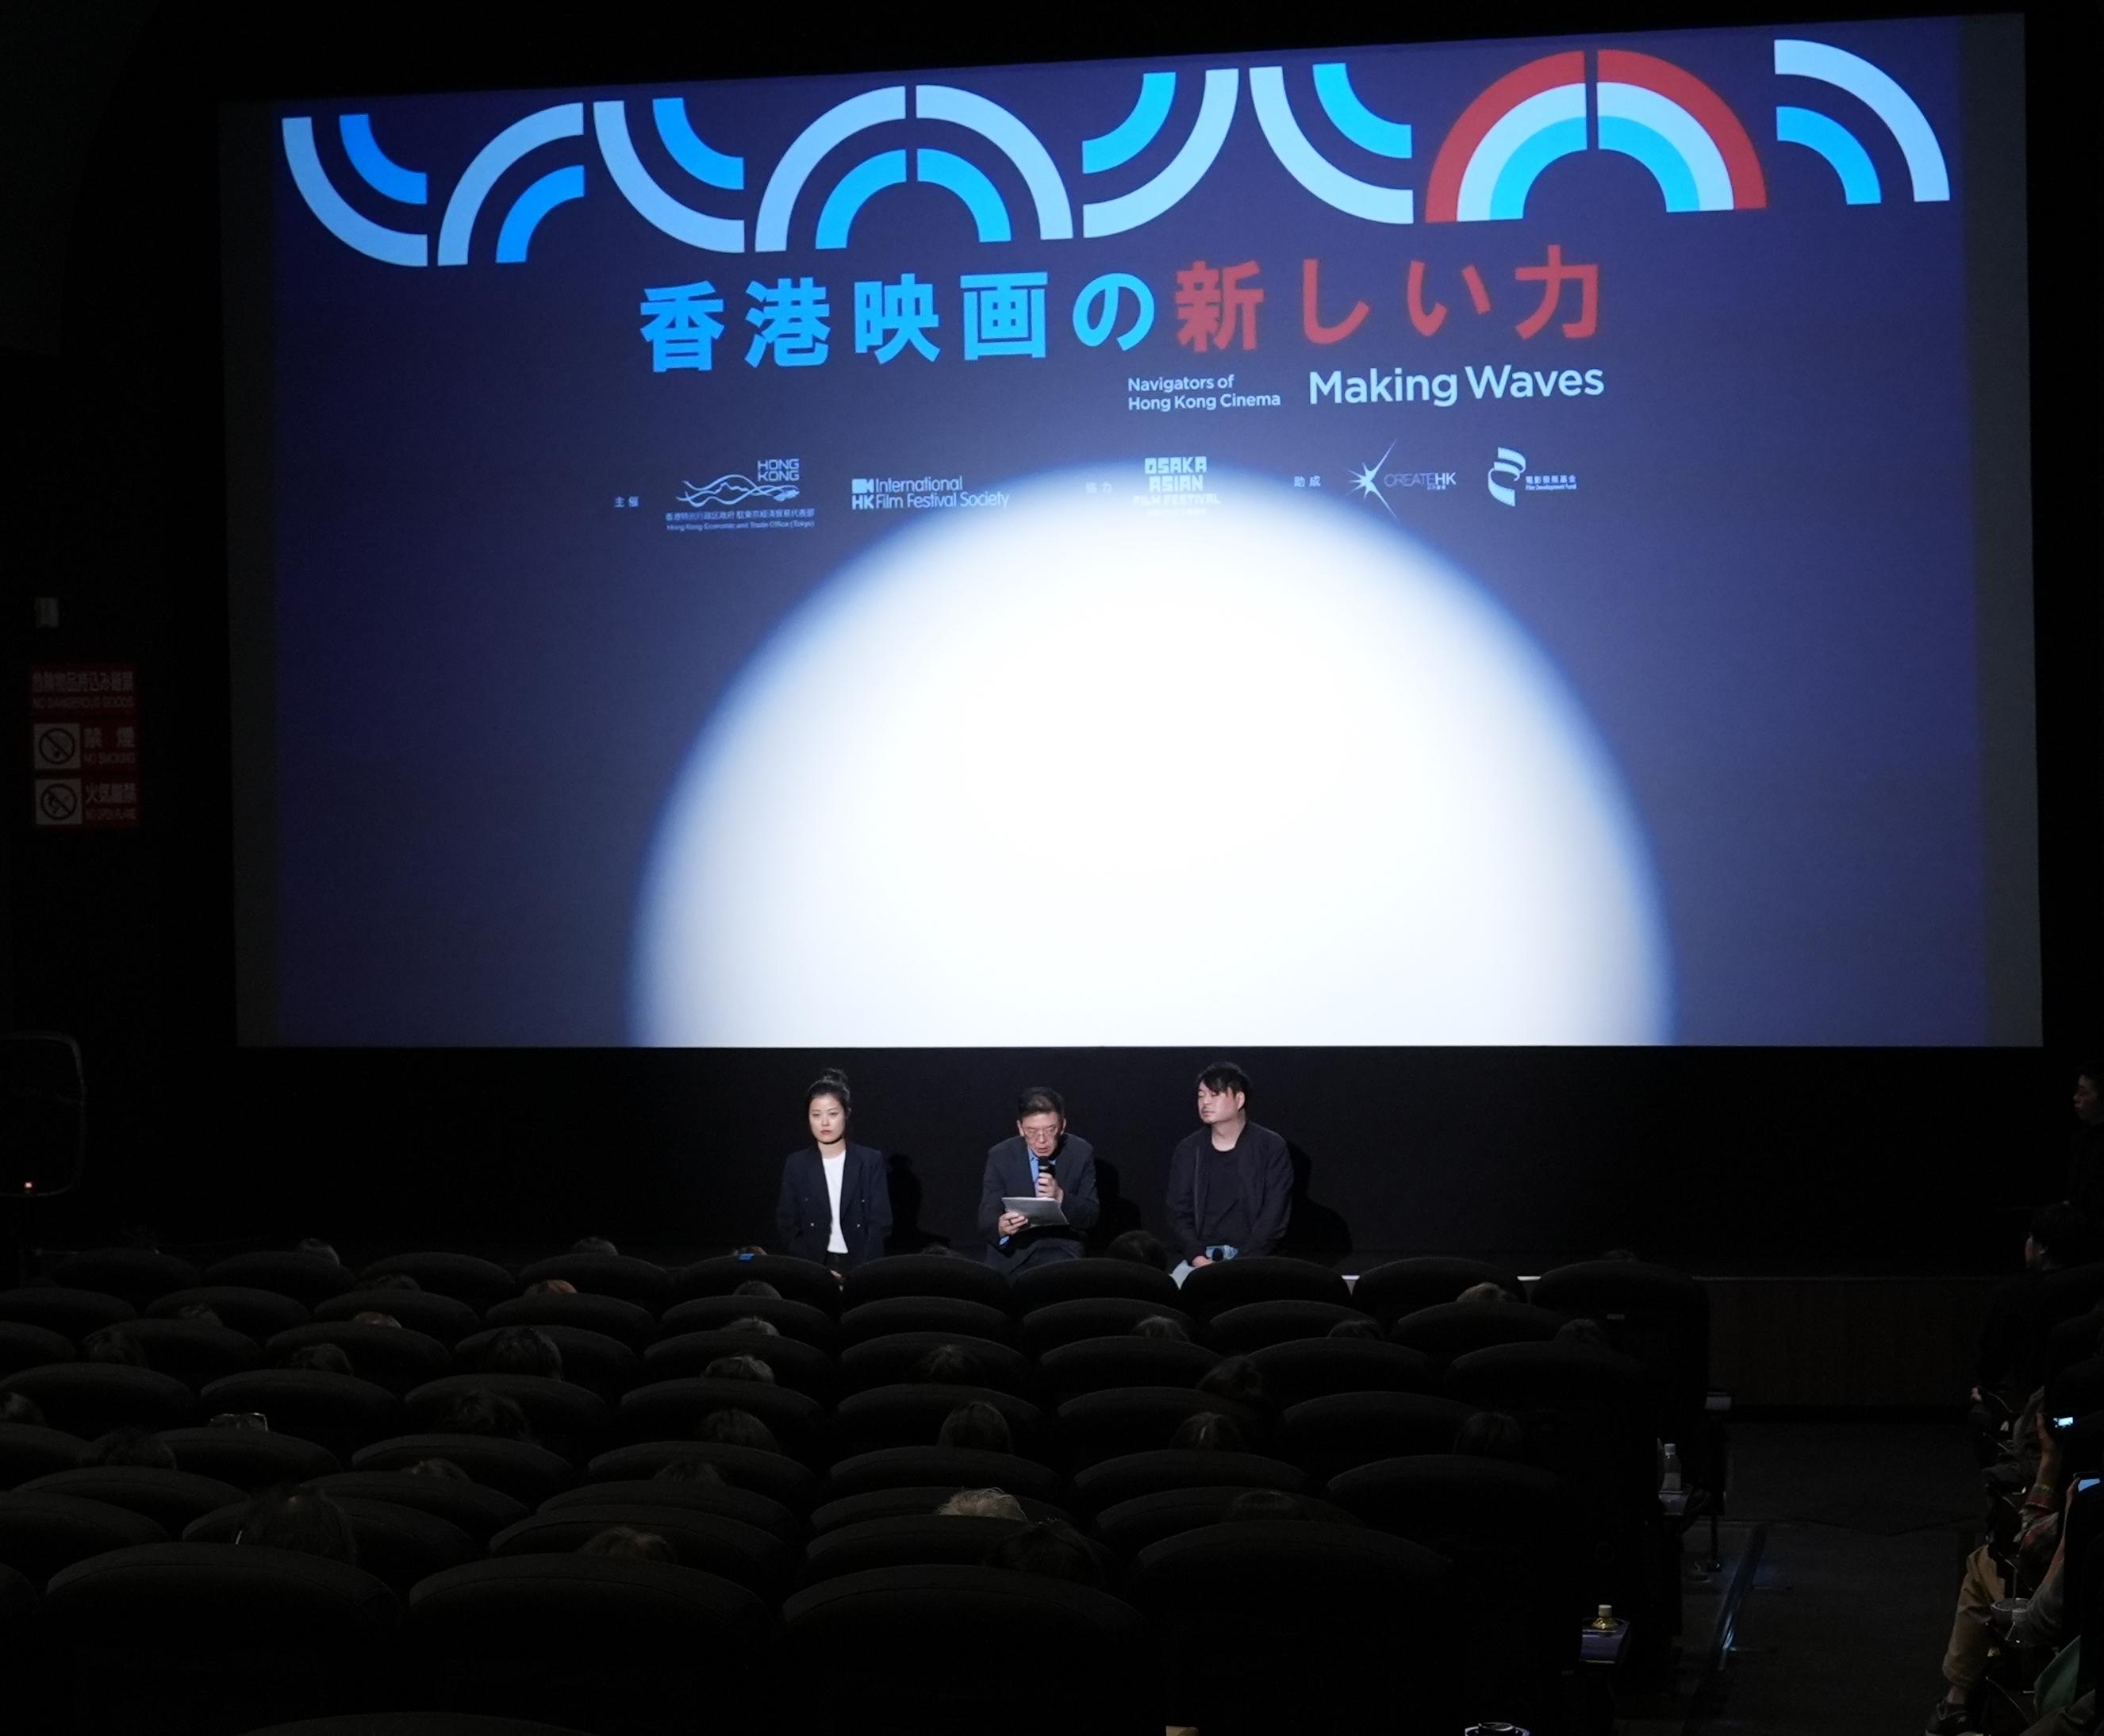 《風再起時》導演翁子光（右）和編劇孫霏（左）今日在電影放映後出席分享會與觀眾交流。